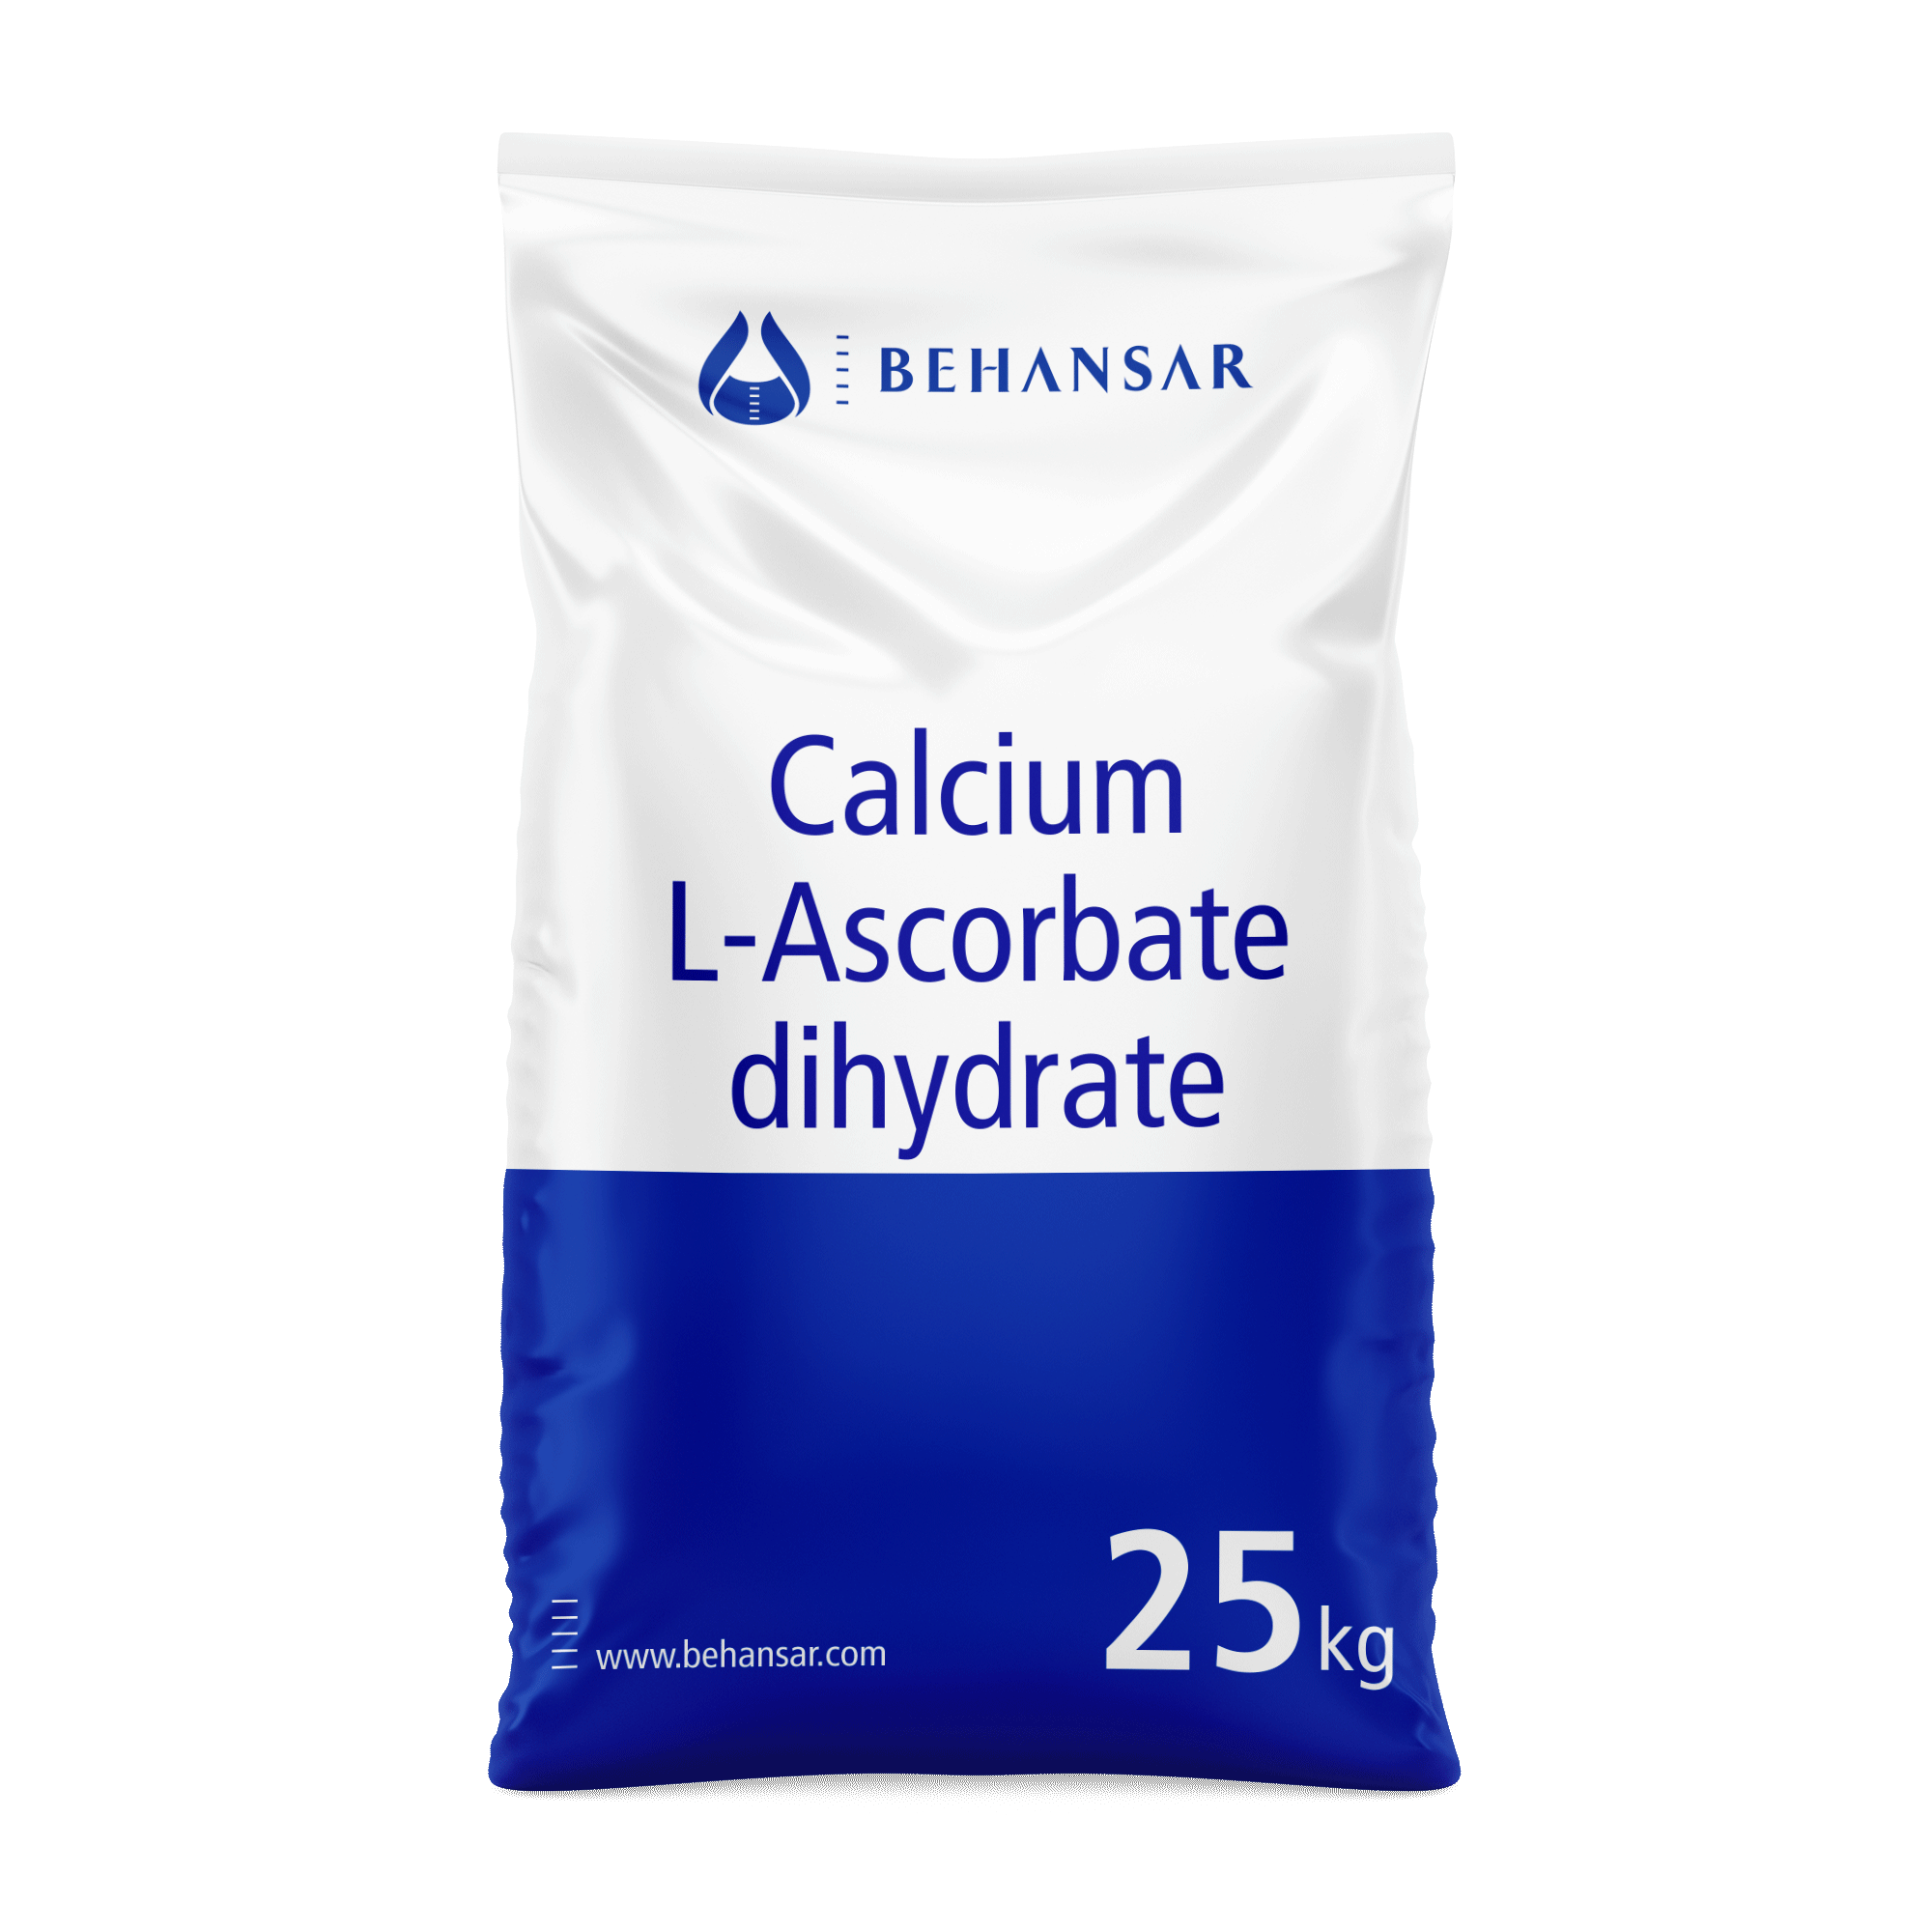 کلسیم آسکوربات دی هیدرات یکی از تولیدات شرکت بهانسار است